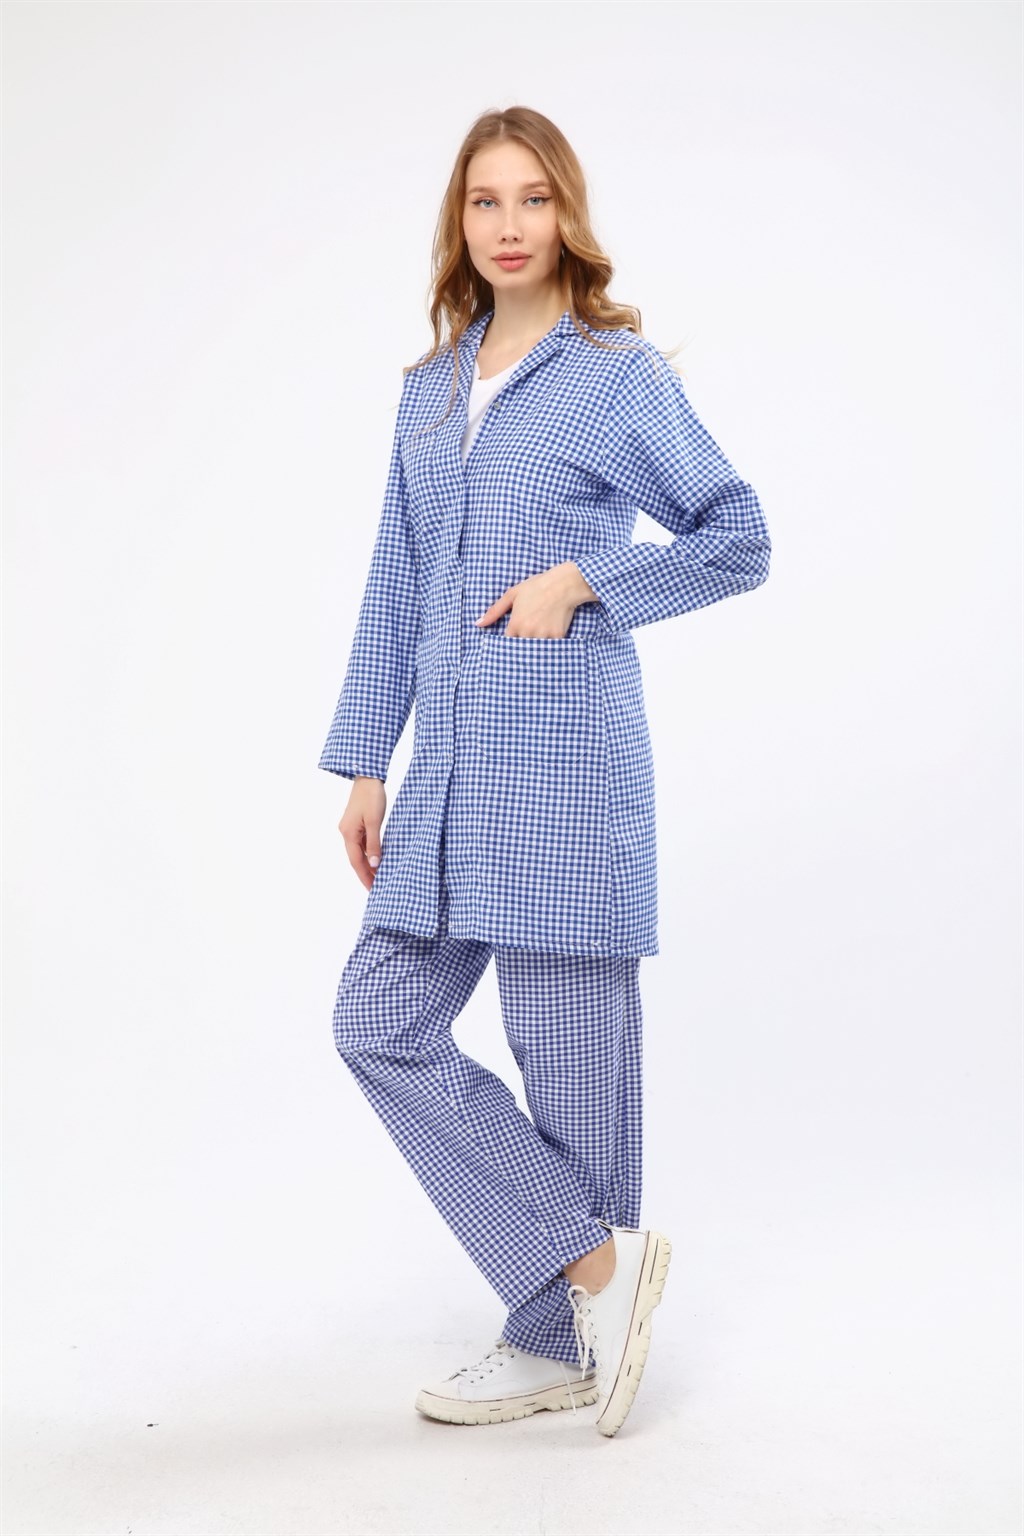 Çamdalı İş Elbiseleri - Pötikare Mavi Kadın Önlük - Kareli Kadın İş  ÖnlüğüÇDMAVIPTKR-Sİş ÖnlükleriÇamdalı İş Elbiseleri186,89 TLÇamdalı İş  Elbiseleri İmalat Sanayi